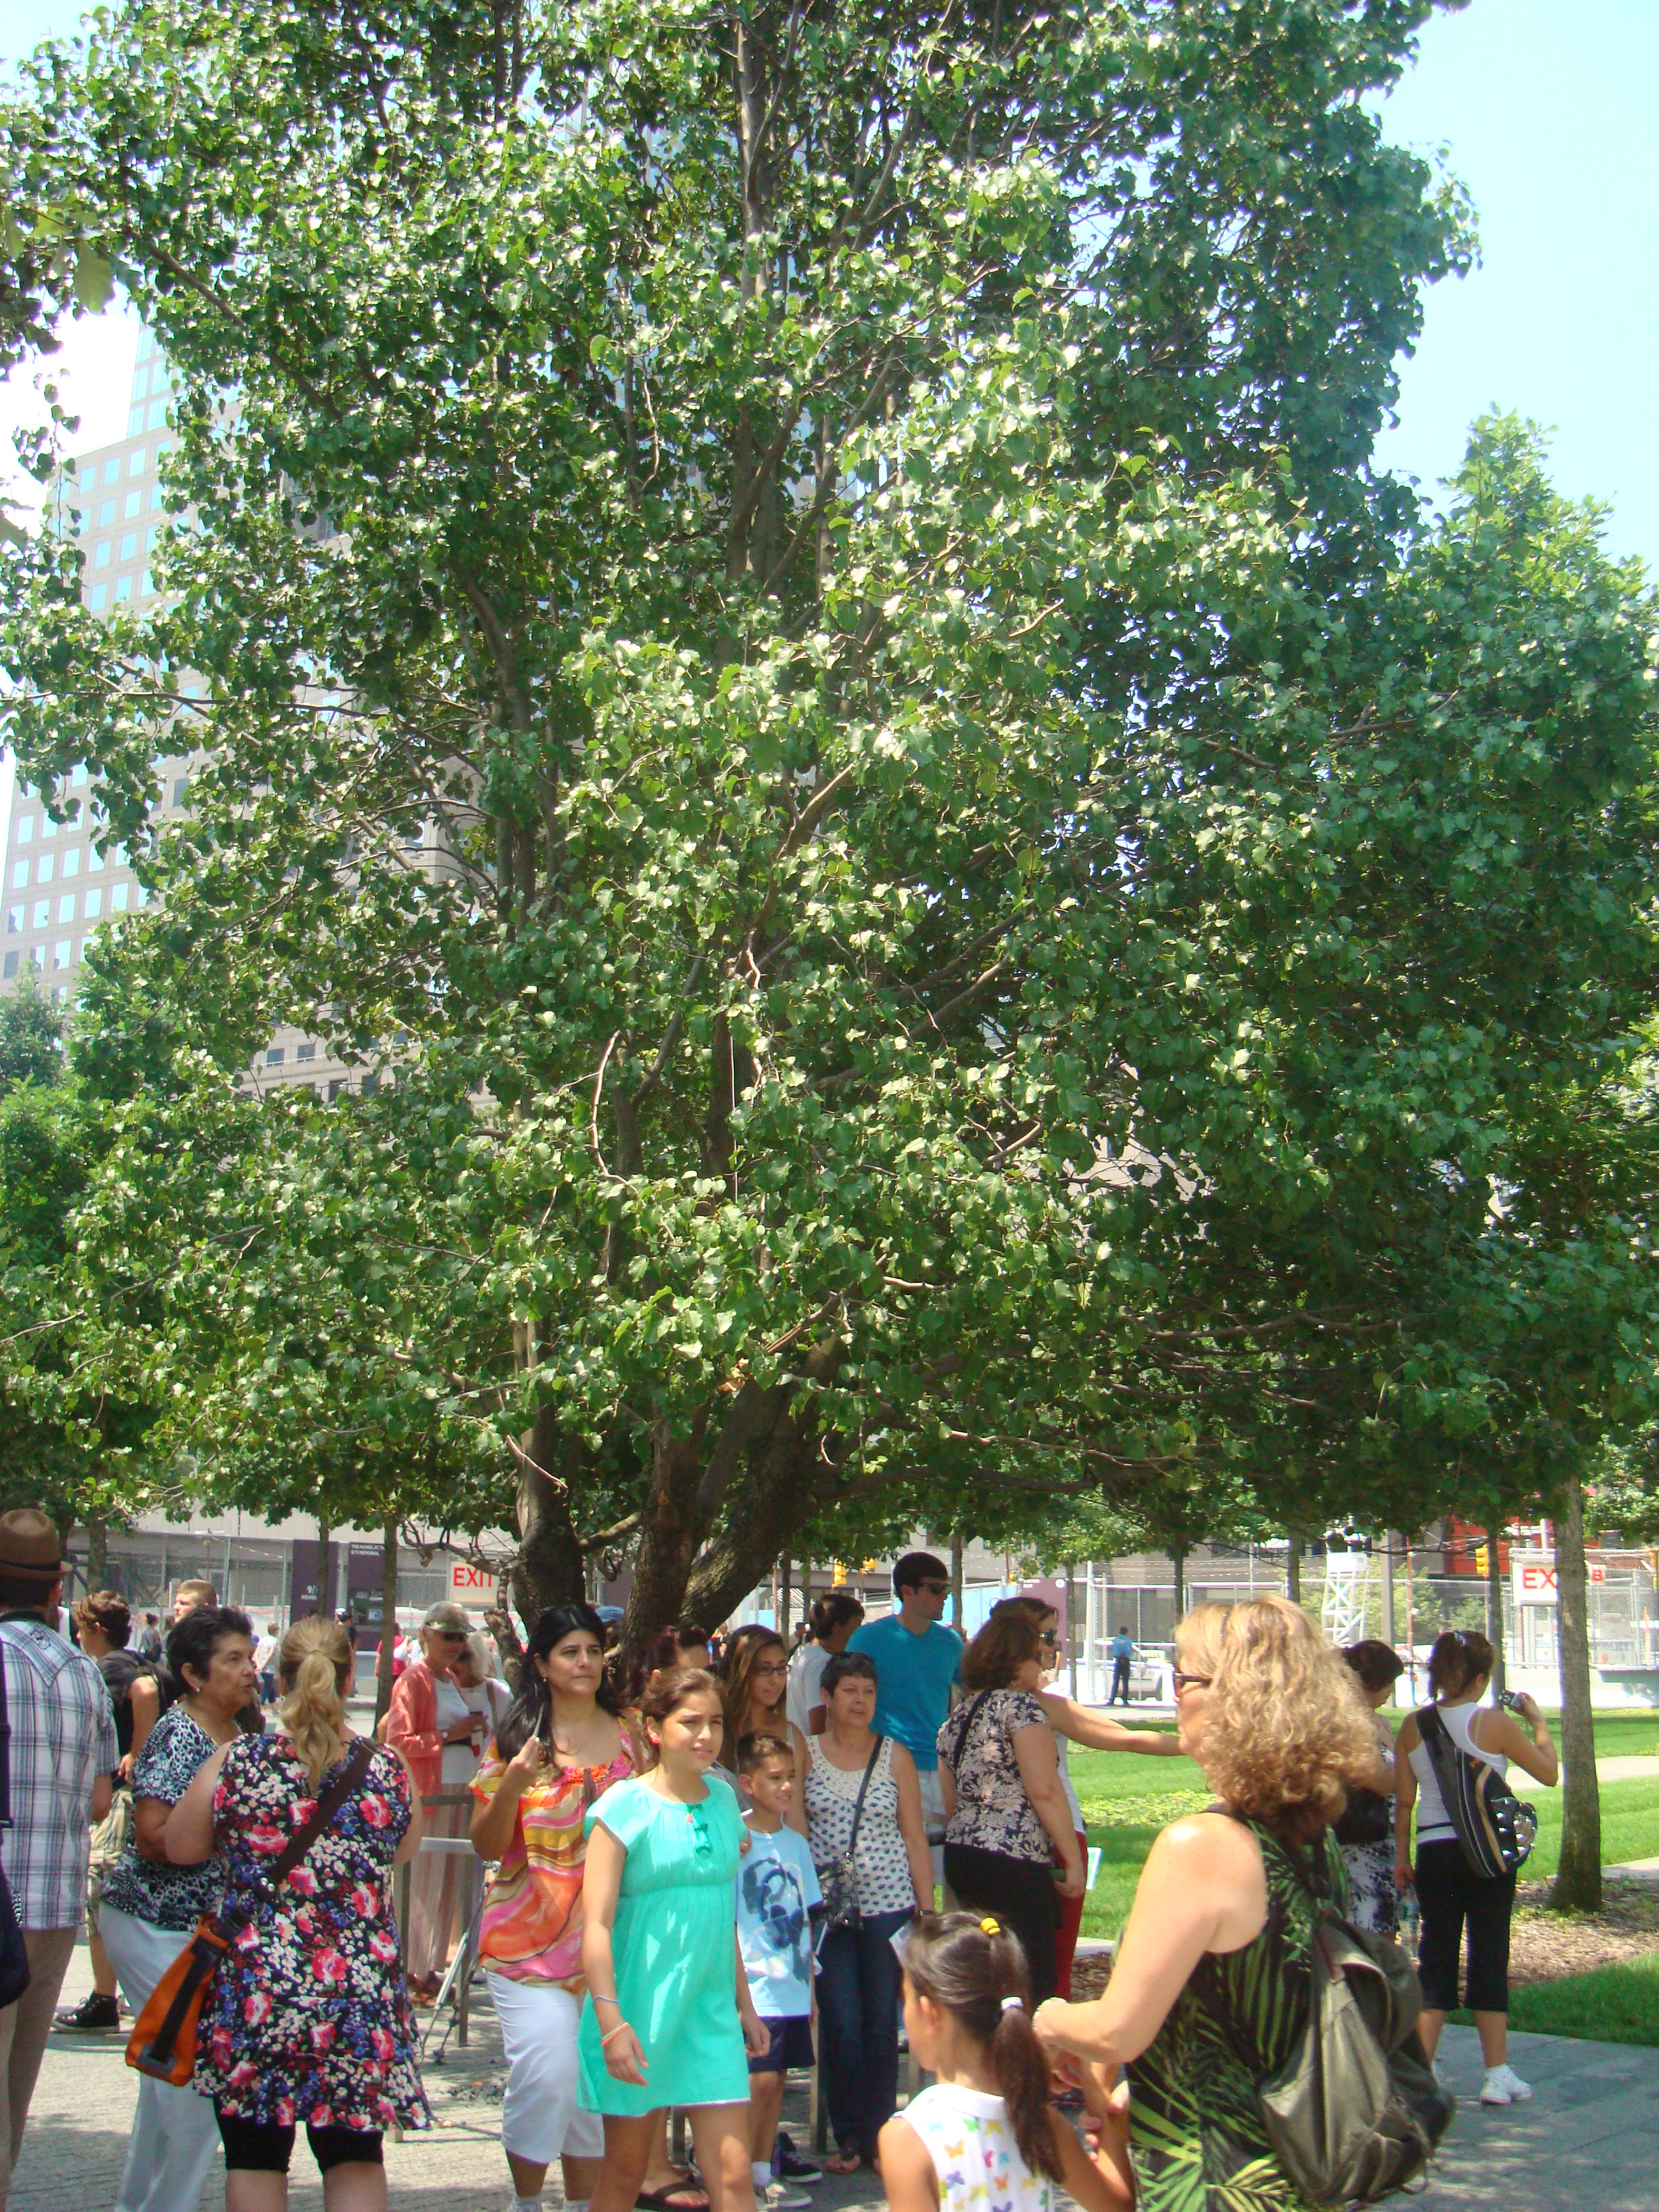 Survivor Tree at 9/11 Memorial